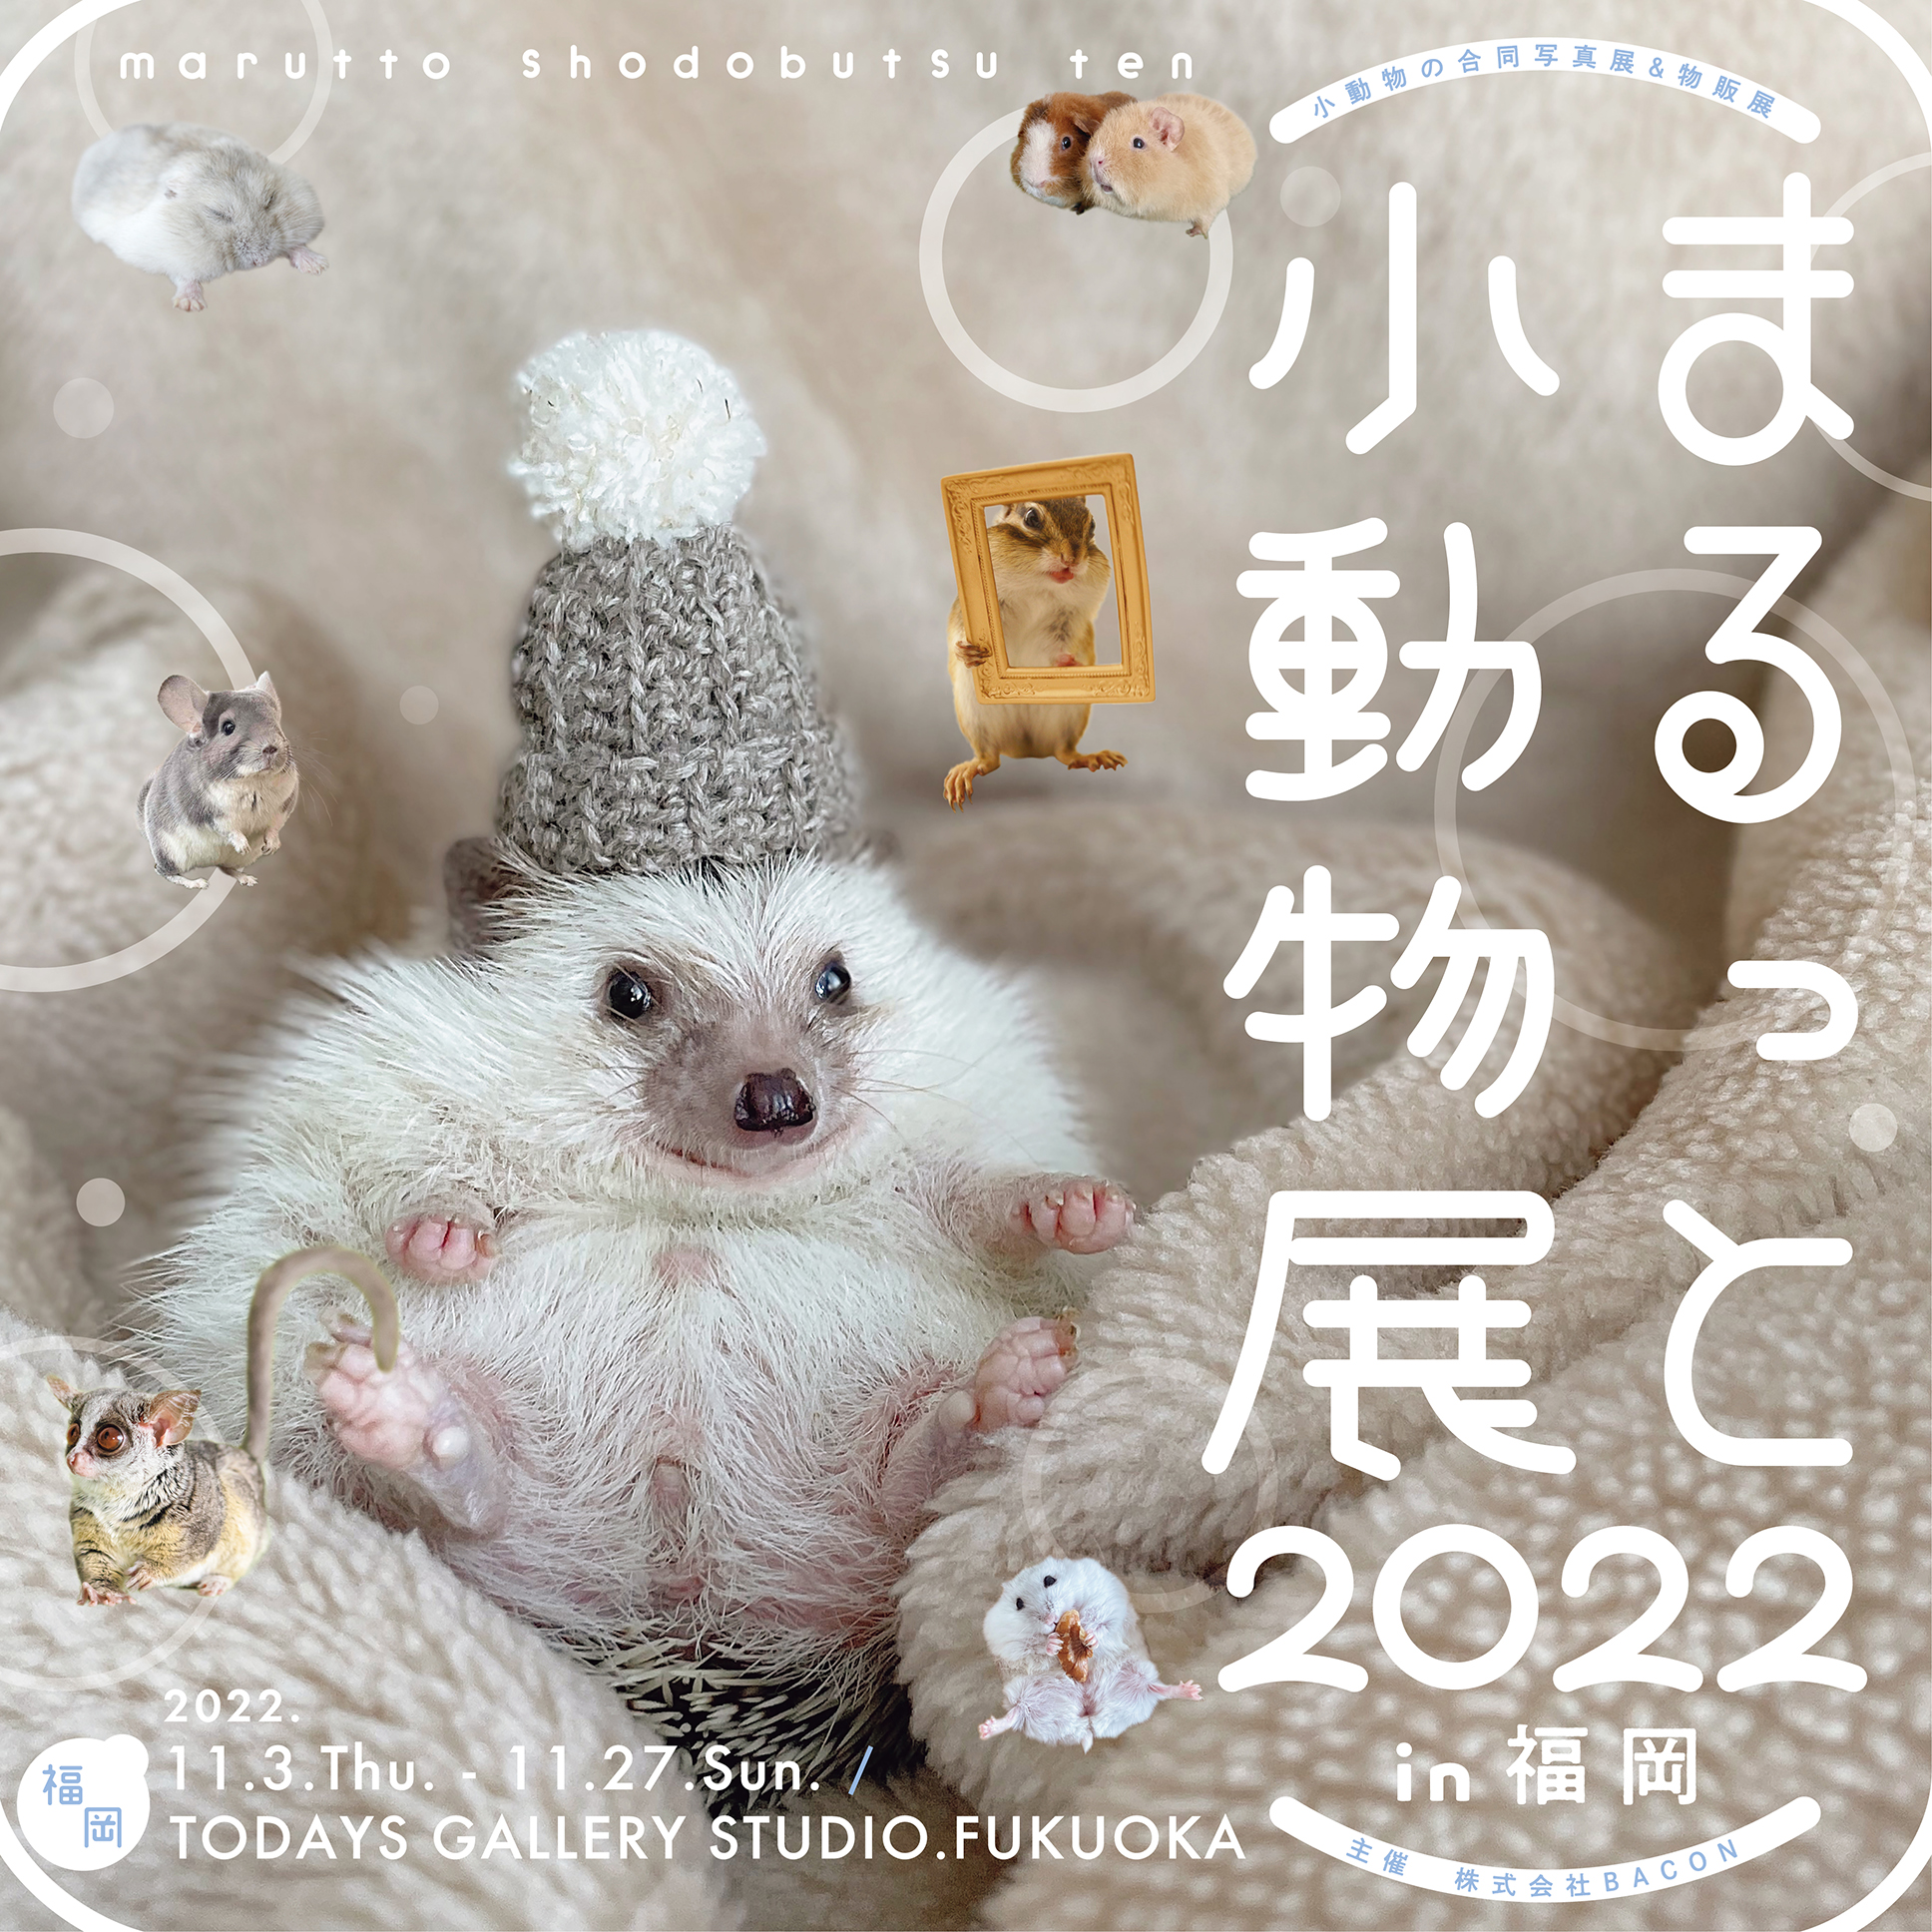 ハムスターの瑚望 まるっと小動物展22 Uzuki Kuzuki Twitter